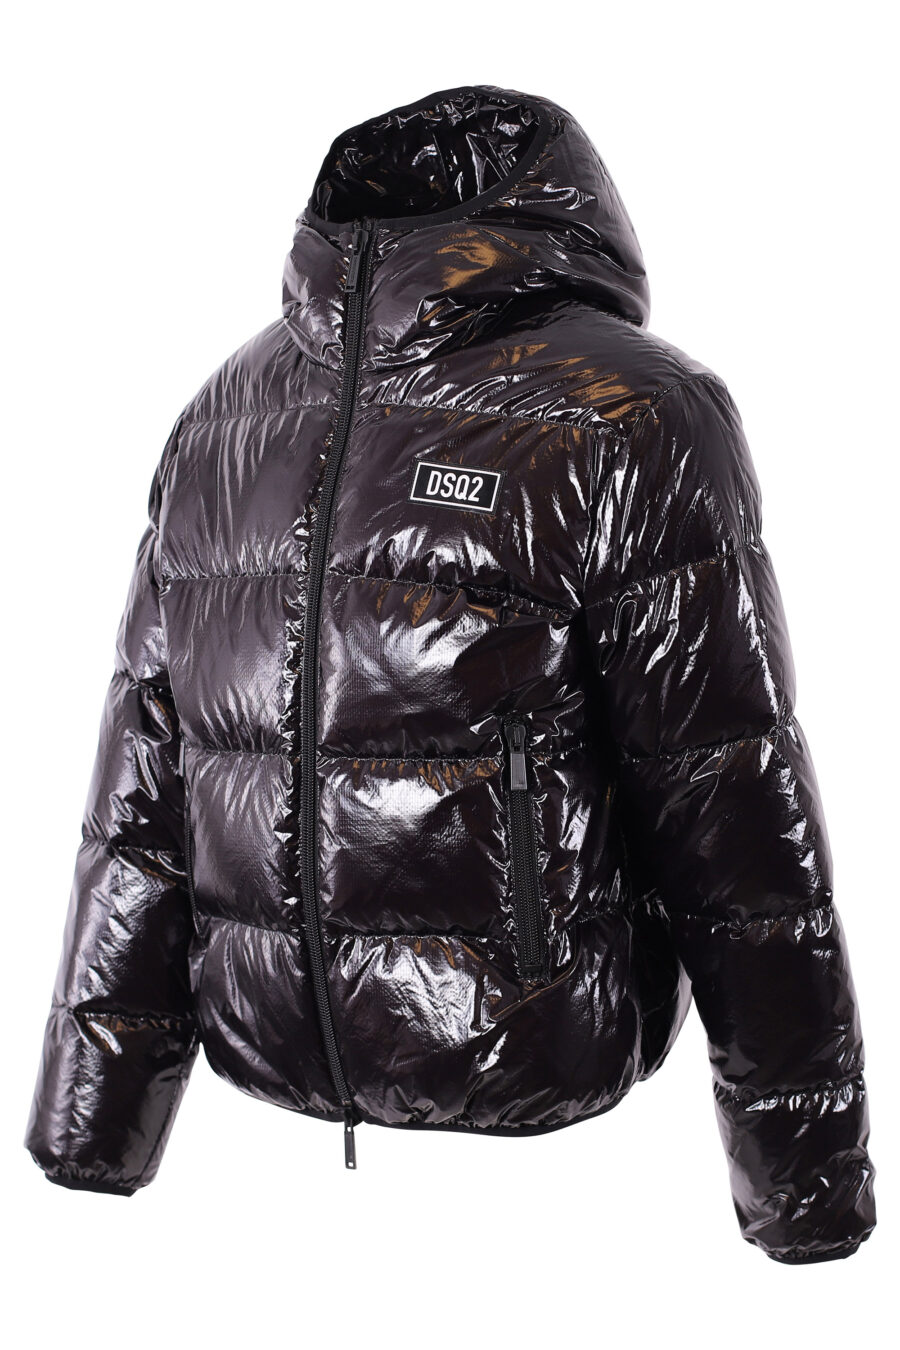 Schwarze glänzende Jacke mit Minilogue - IMG 1093